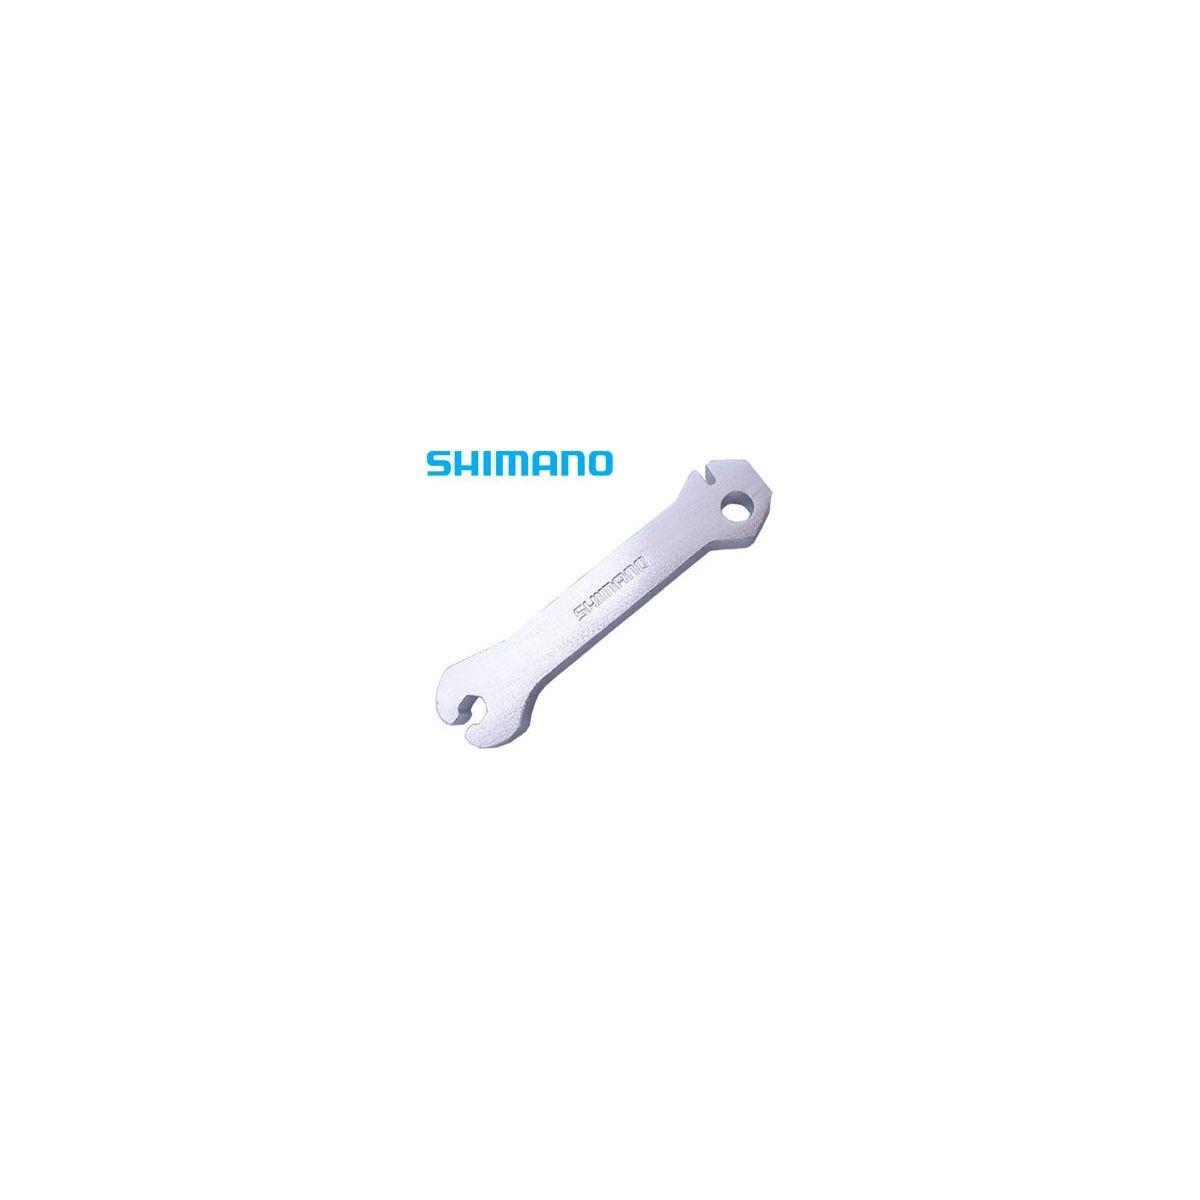 Shimano llave de radios ruedas WH-7900,6700